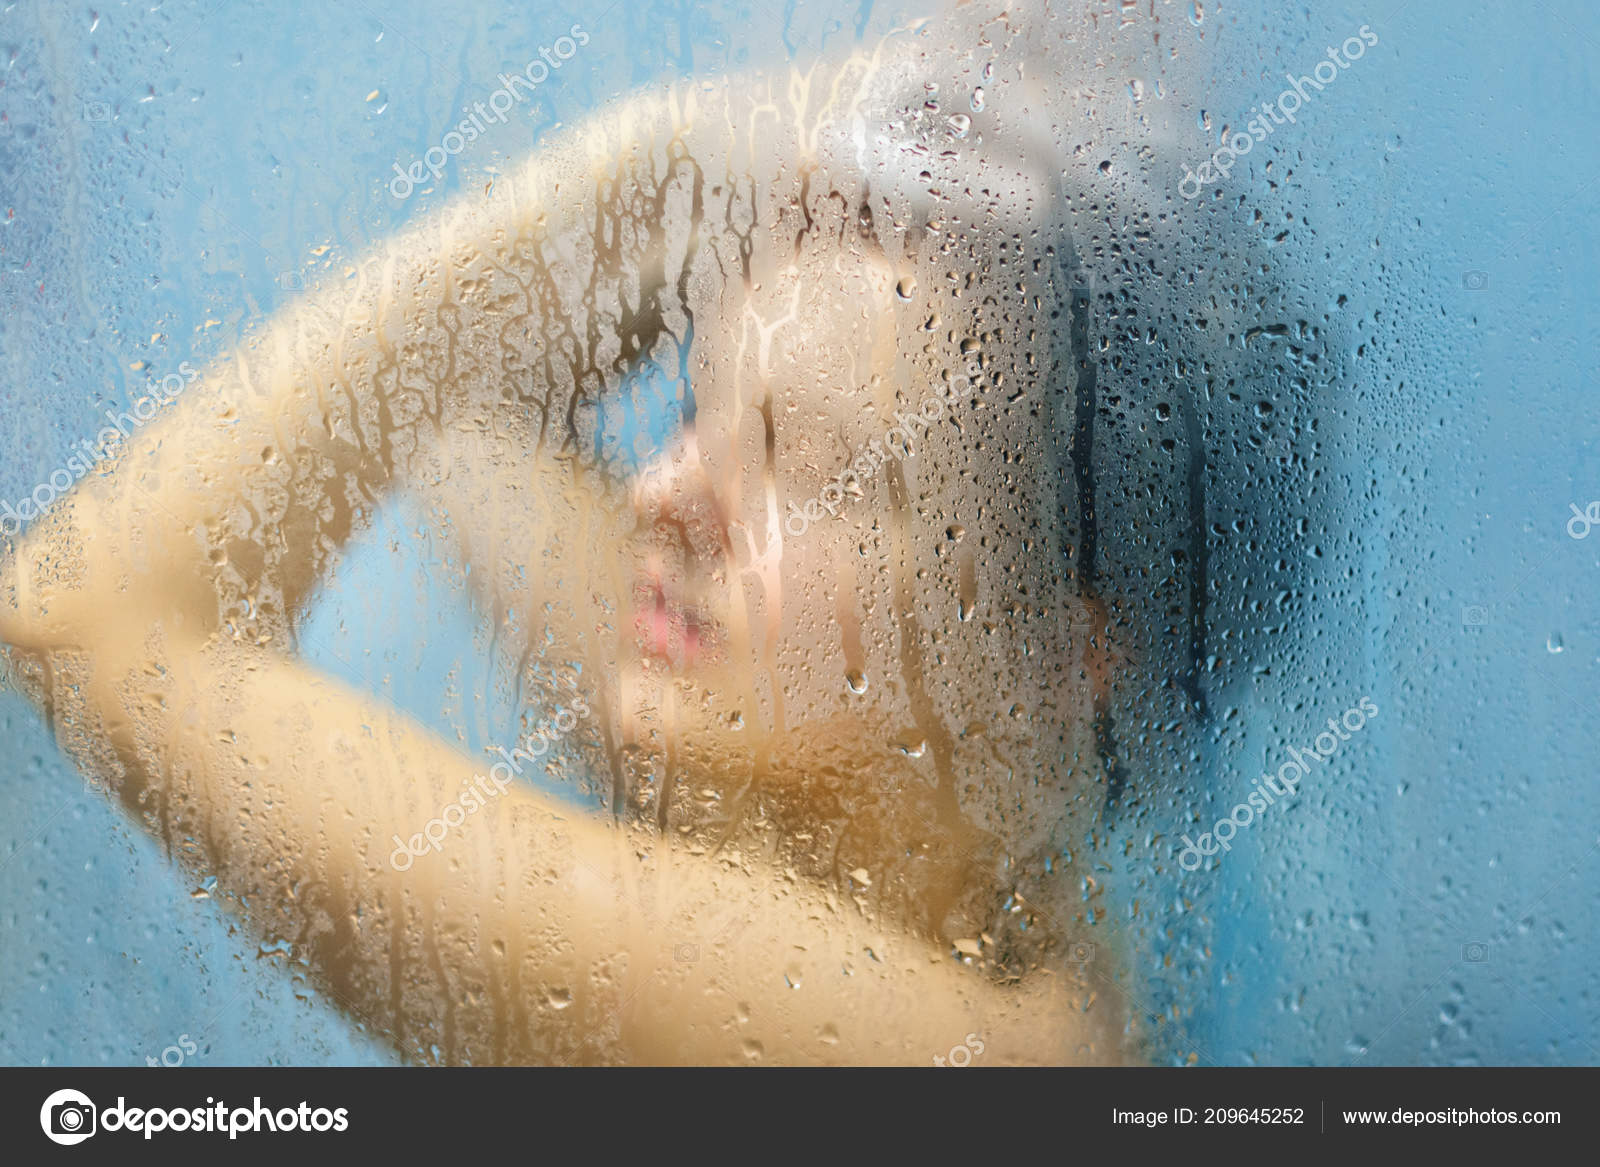 Любимая жена принимает душ фото